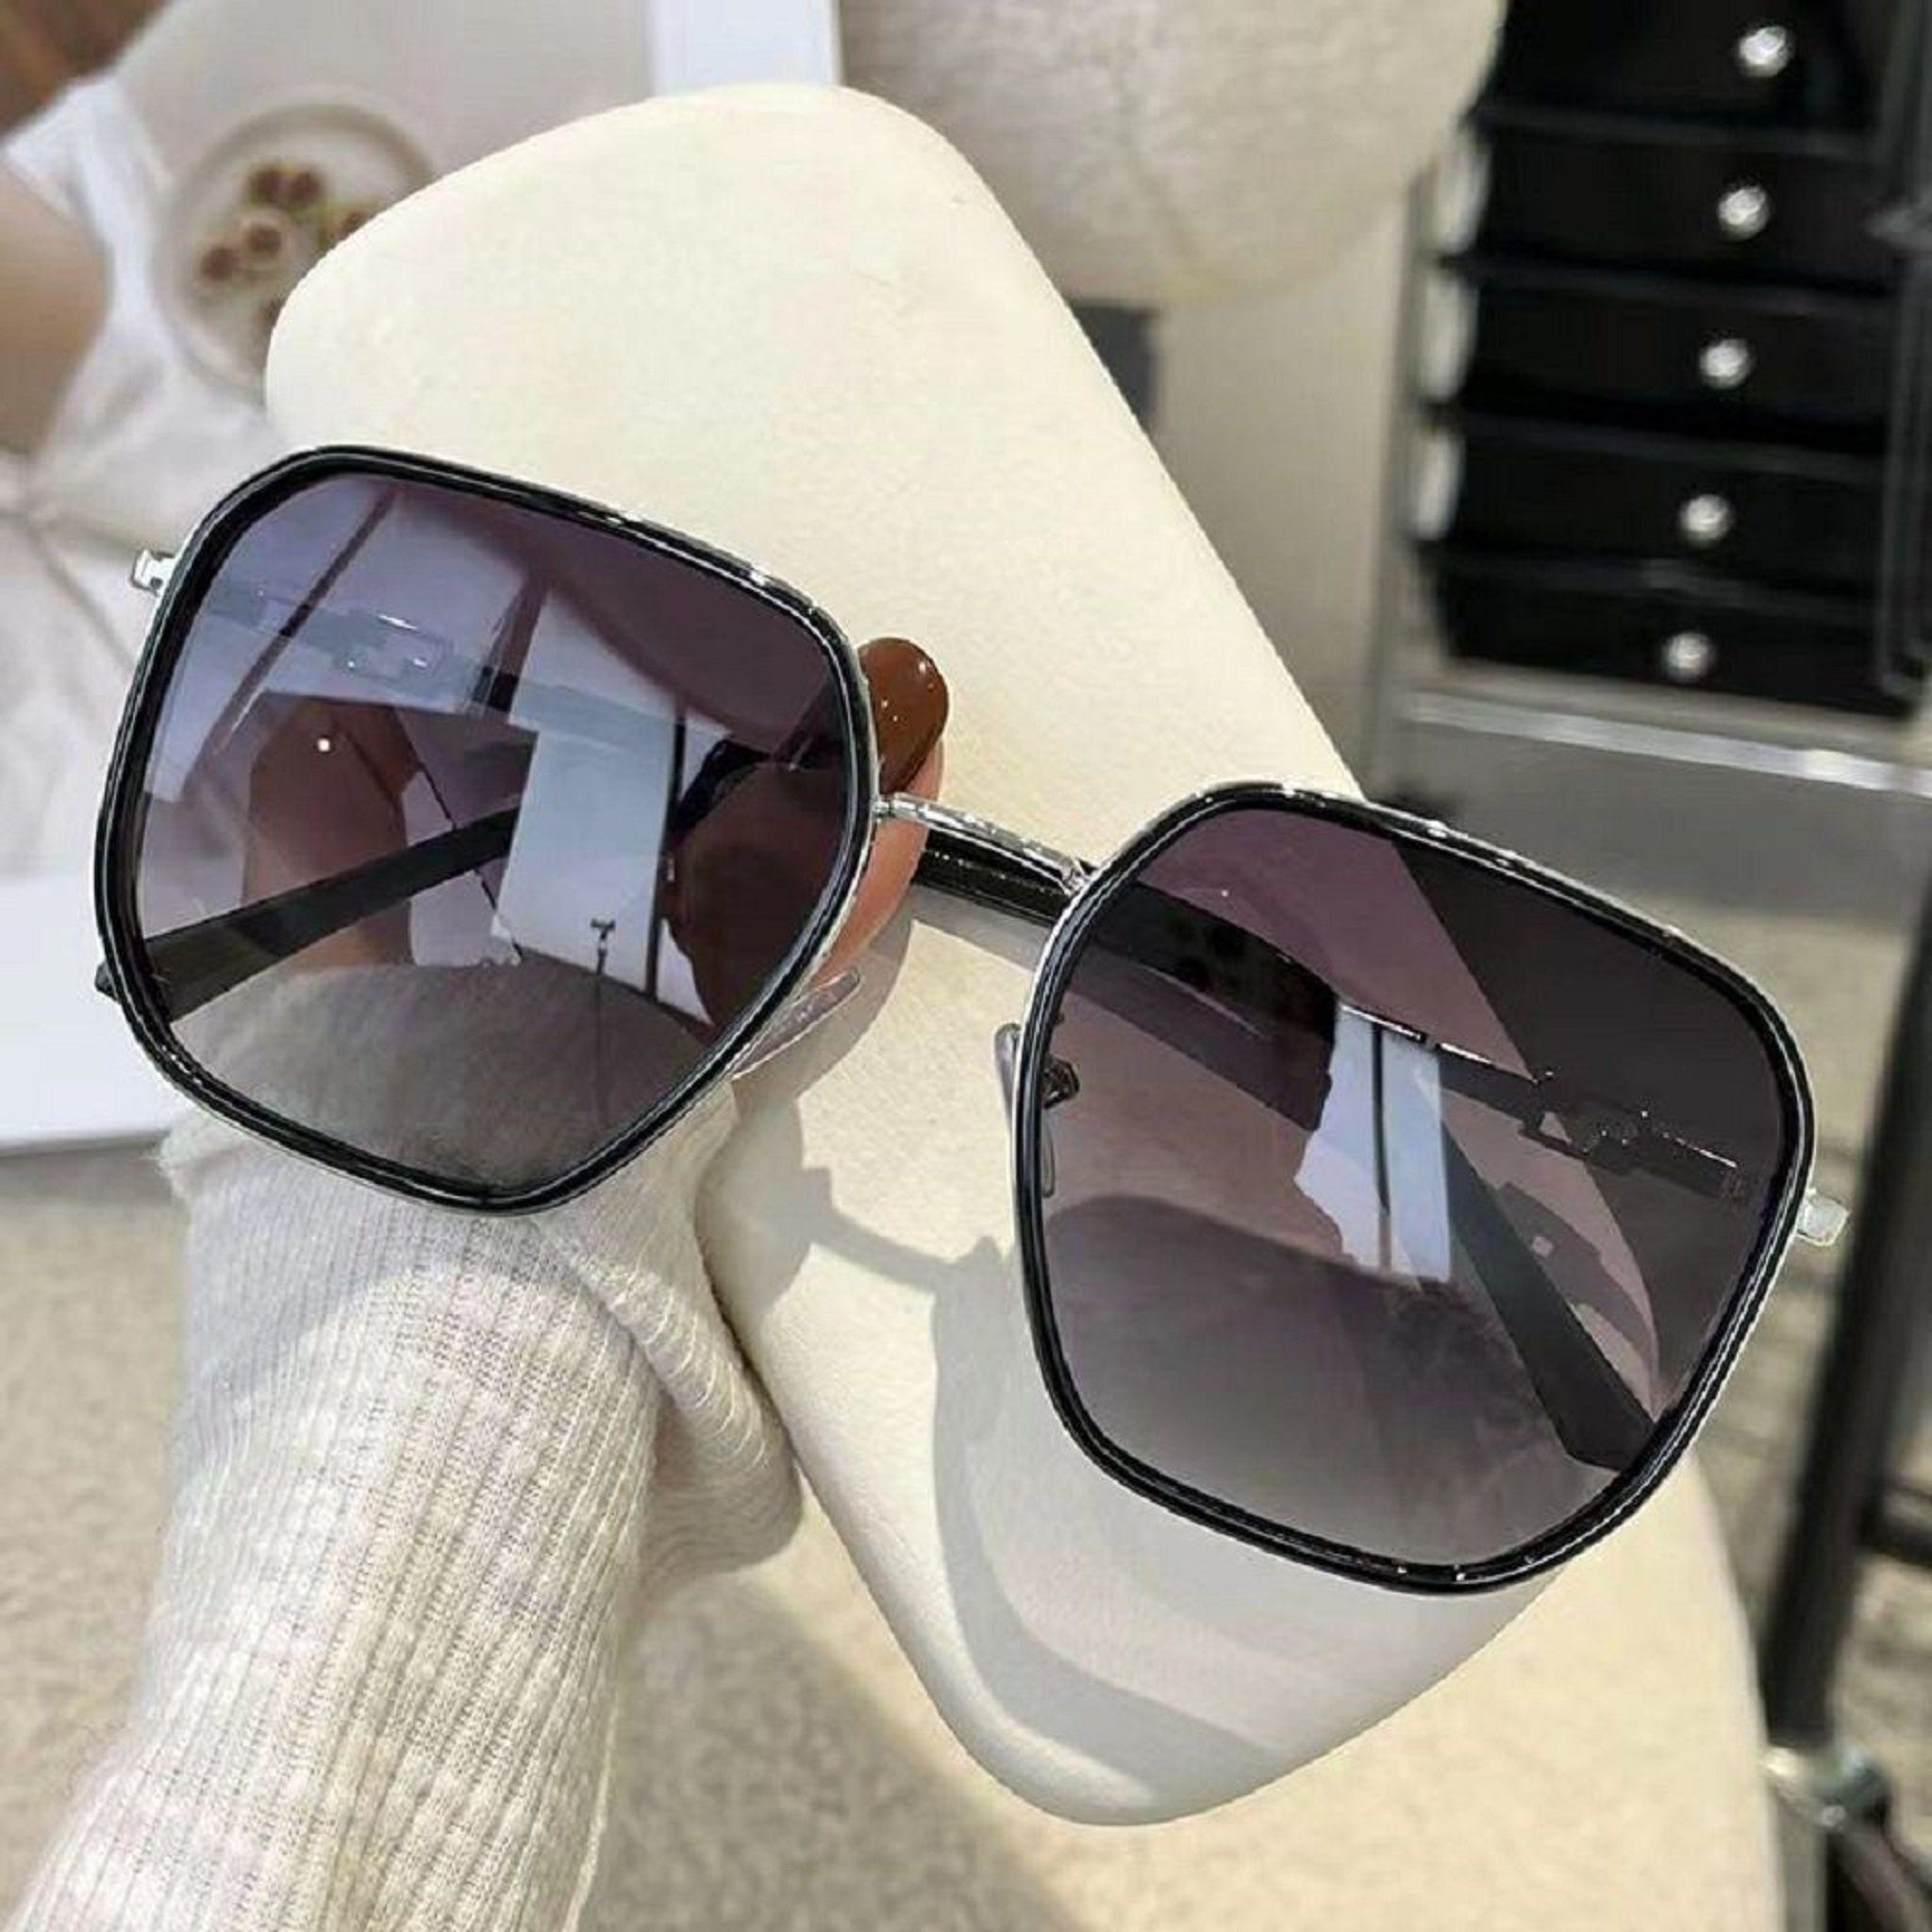 Mutoy Sonnenbrille Sonnenbrille,Sonnenbrille Damen,sonnenbrille damen polarisiert (Frauen Fashion Sonnenbrille , vintage sonnenbrille damen, mit UV400 Schutz) Schwarz